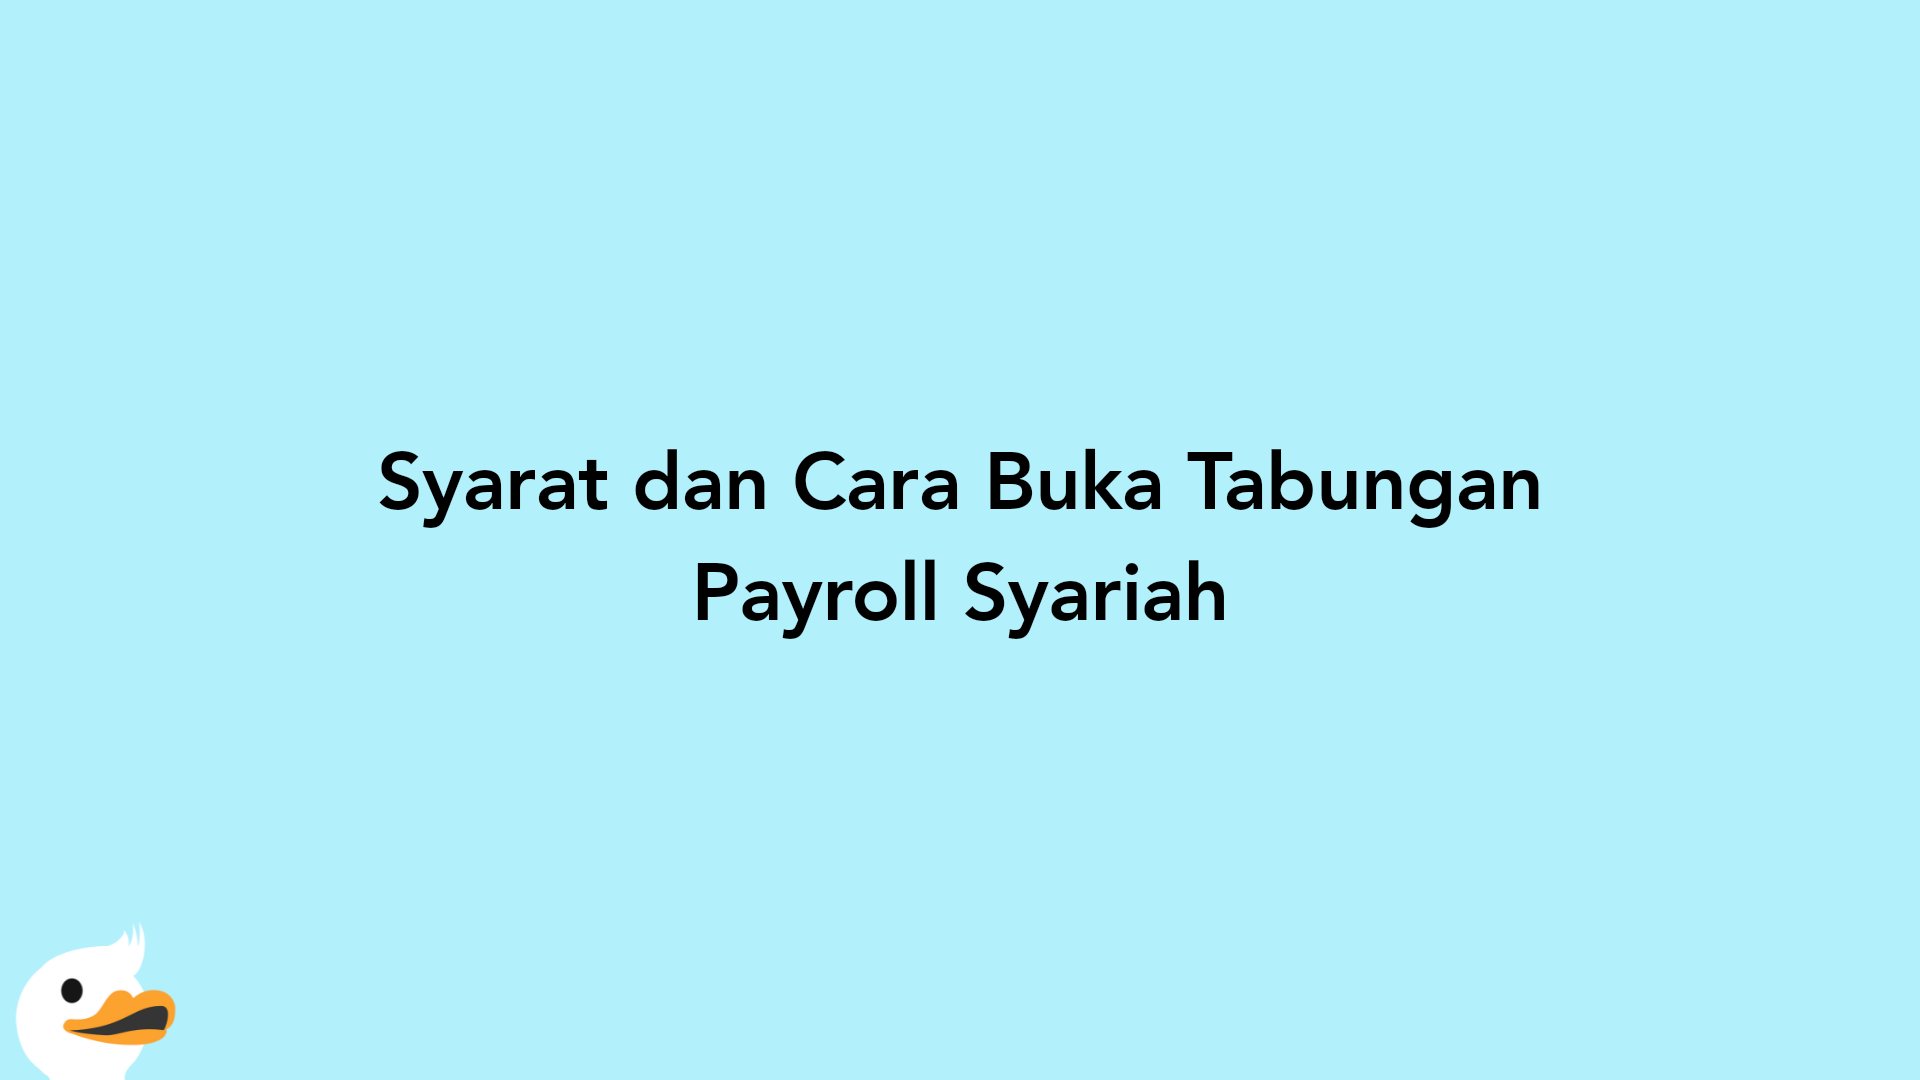 Syarat dan Cara Buka Tabungan Payroll Syariah